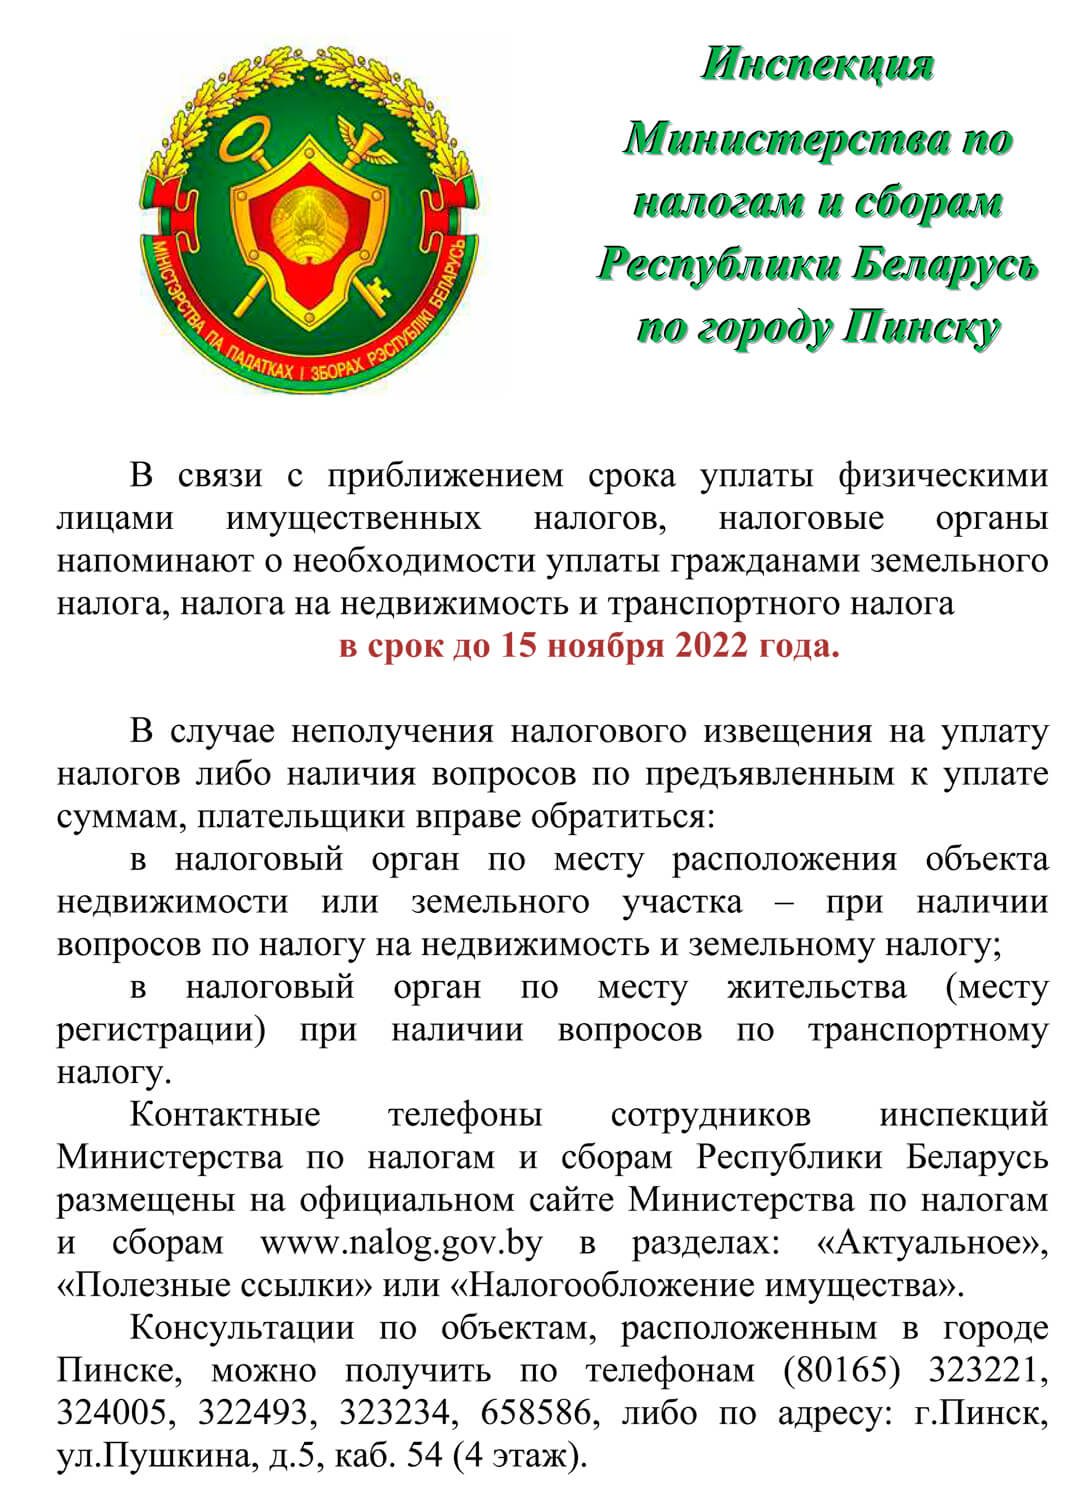 Сайт министерства налогов и сборов республики беларусь. Налоговые органы.